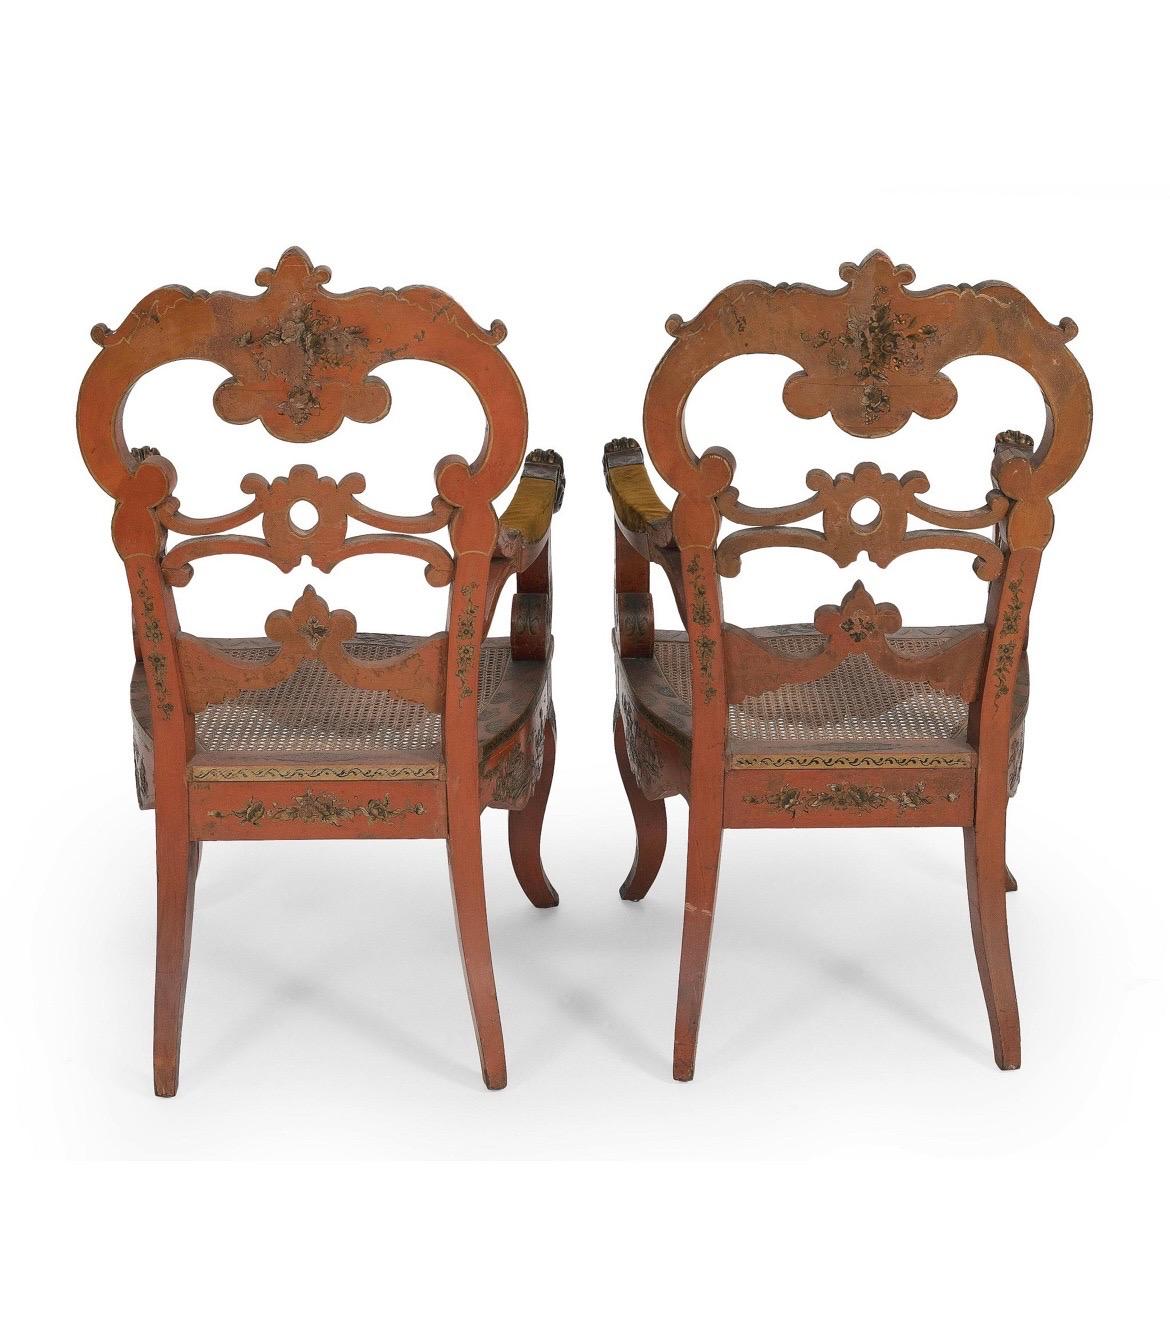 Vénitien, Début du 20e siècle. 

Exceptionnelle paire de fauteuils vénitiens anciens avec un fond en laque rouge et des décorations chinoises dorées sur toute la surface. Chaque chaise présente des guerriers figurés, des villes pagodes et des motifs